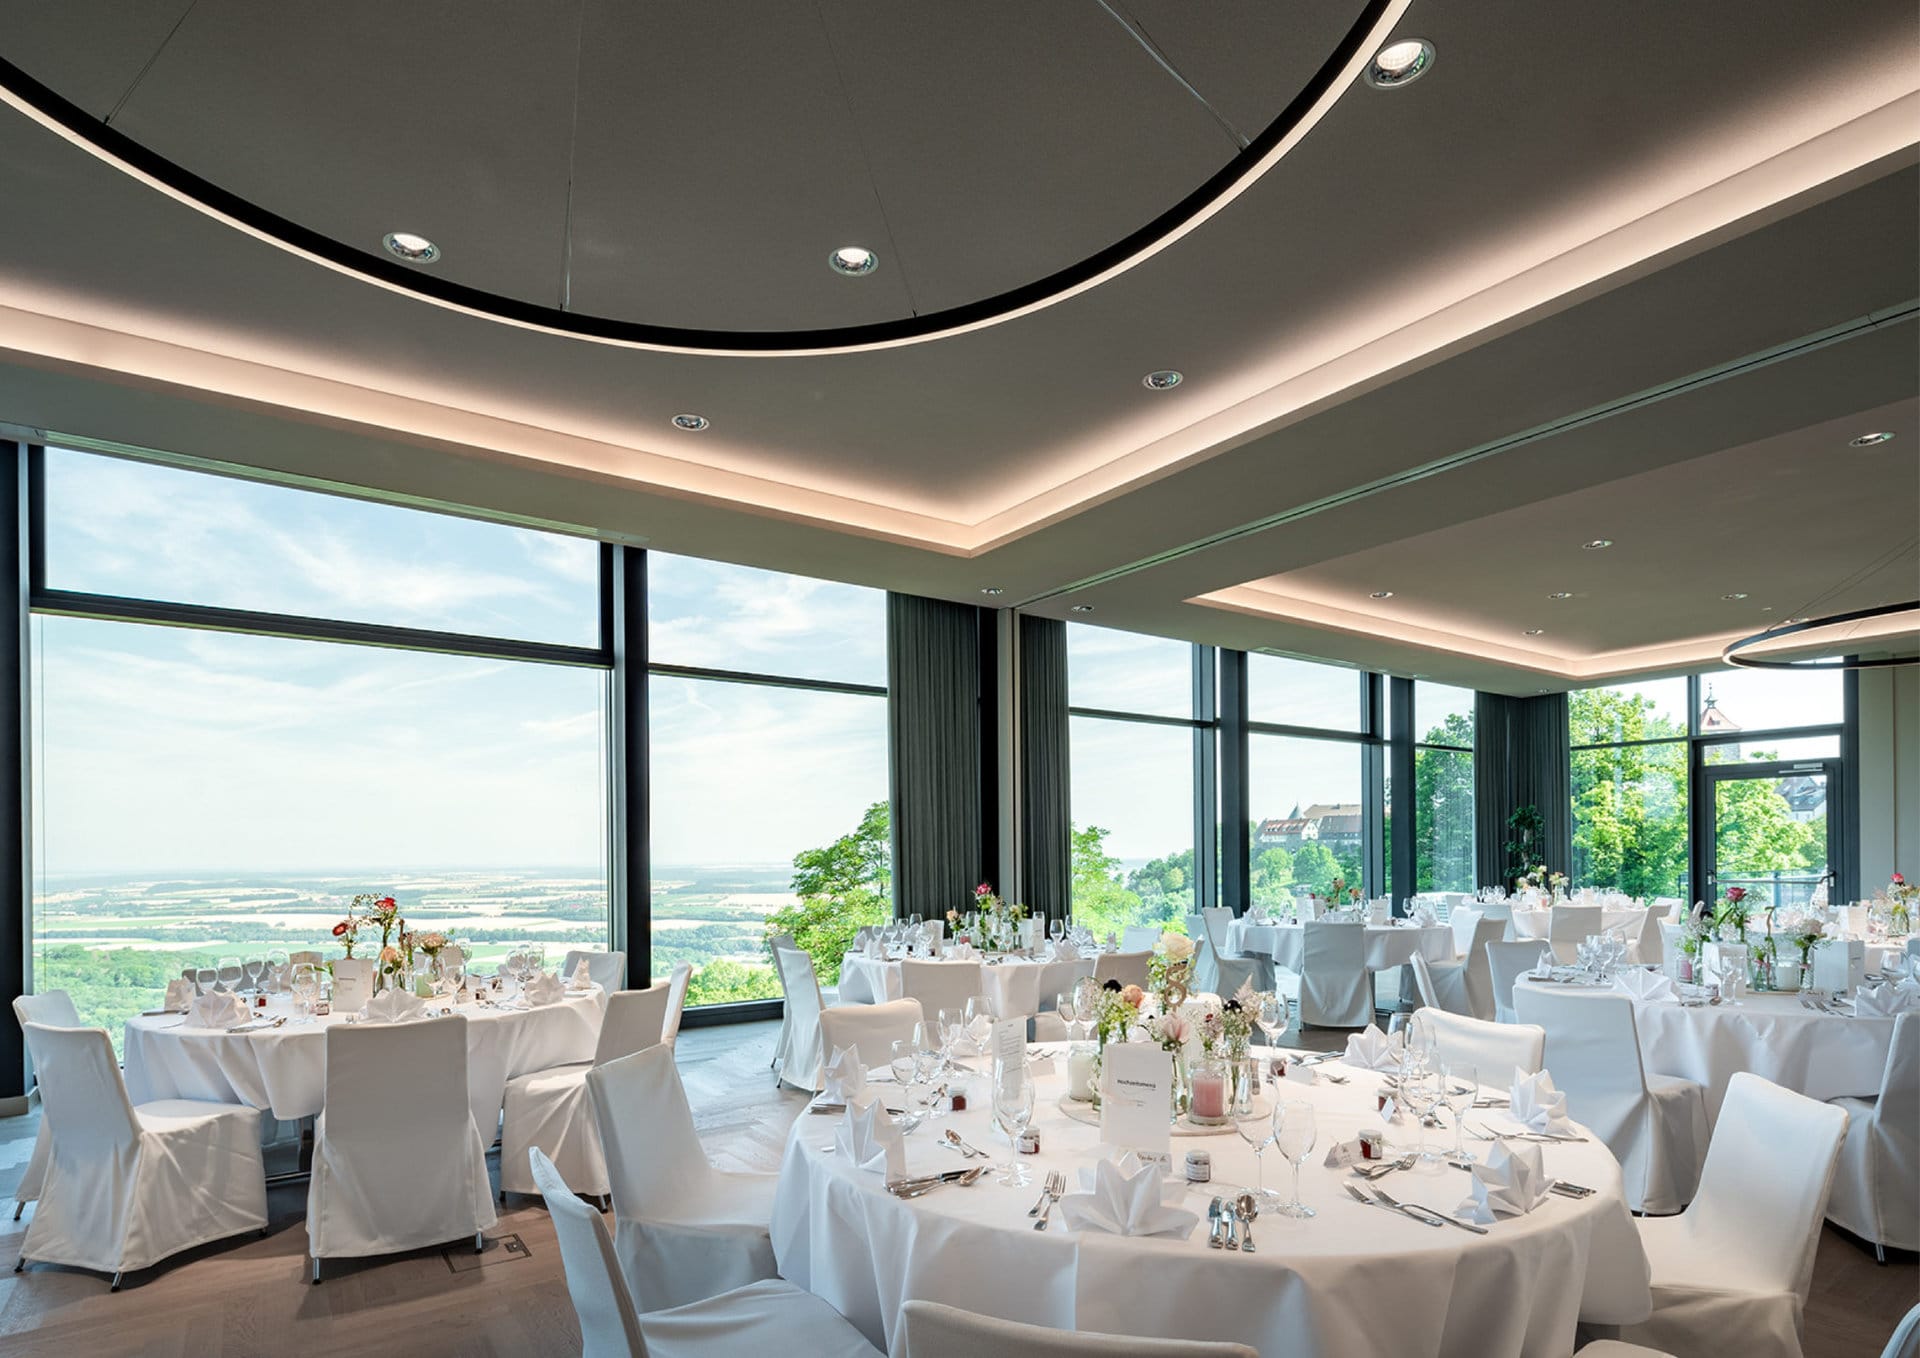 Ein eleganter Bankettsaal im Panoramahotel mit runden, für eine Veranstaltung gedeckten Tischen und großen Fenstern, die einen Panoramablick auf die Waldenburger Landschaft draußen bieten.